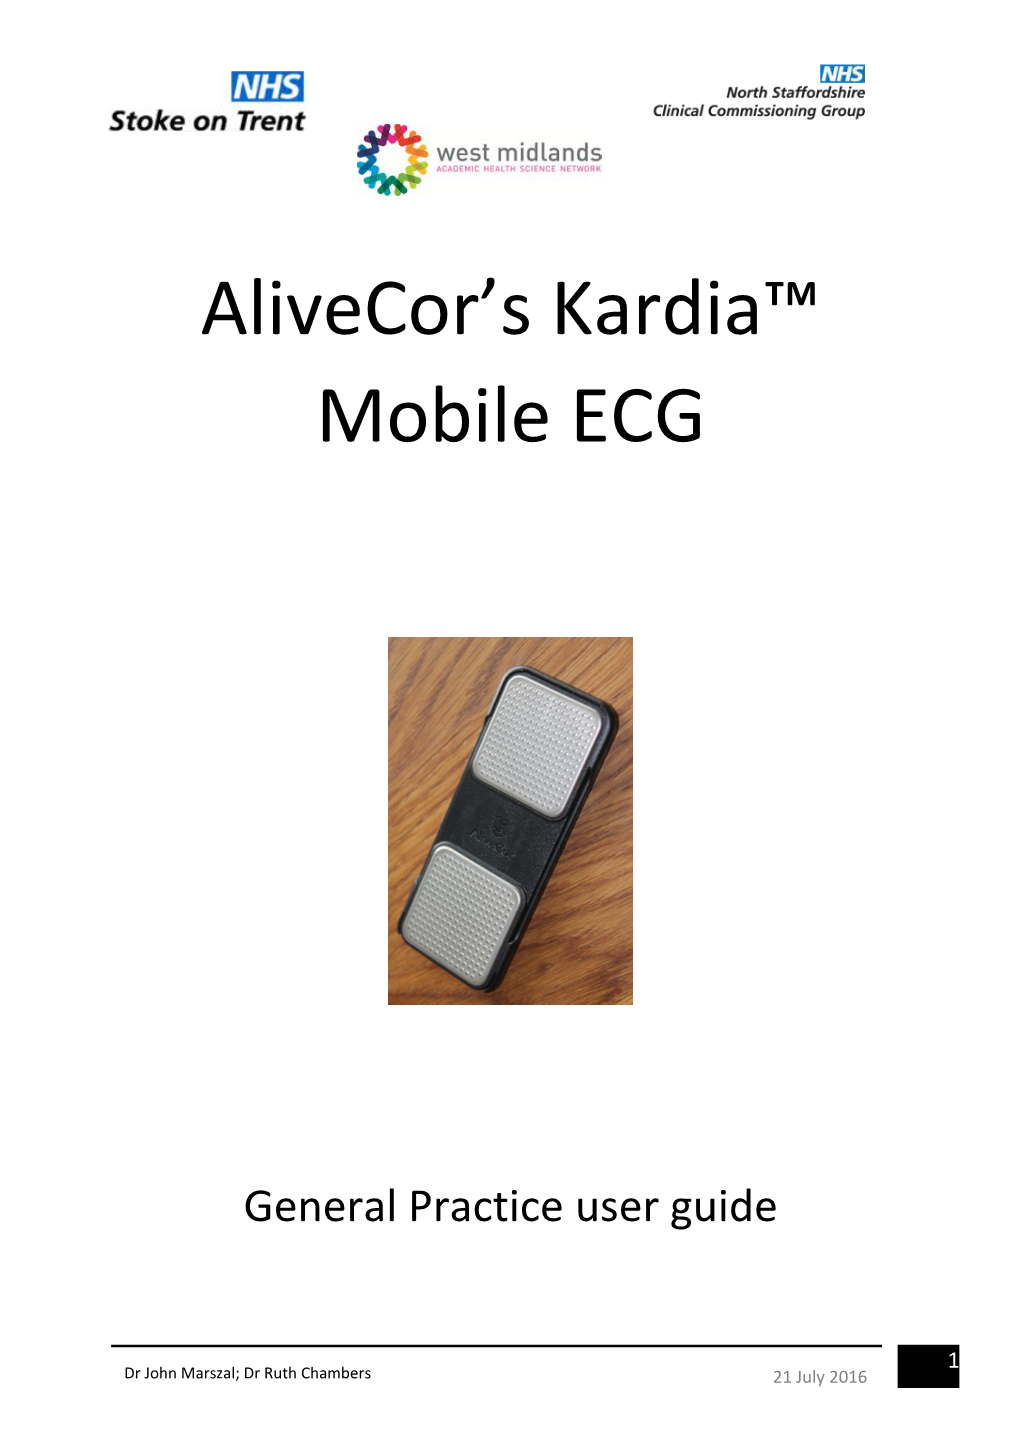 Alicecor Practice User Manual